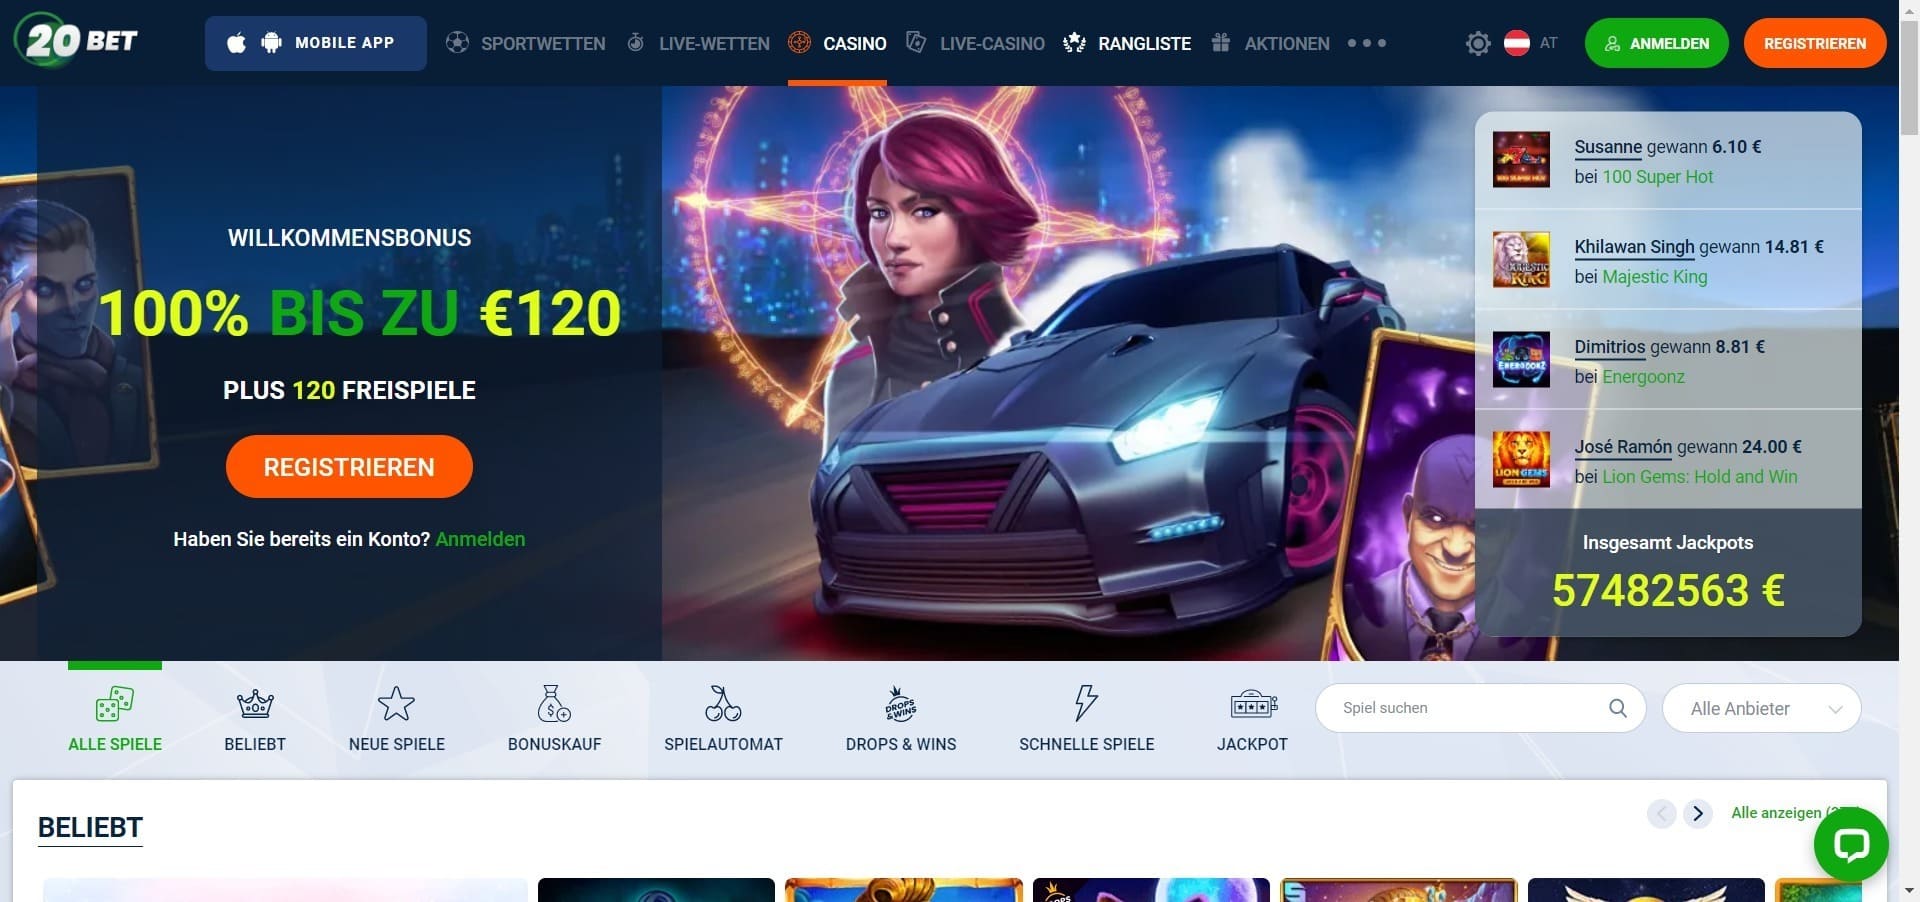 Offizielle Website der 20bet Casino